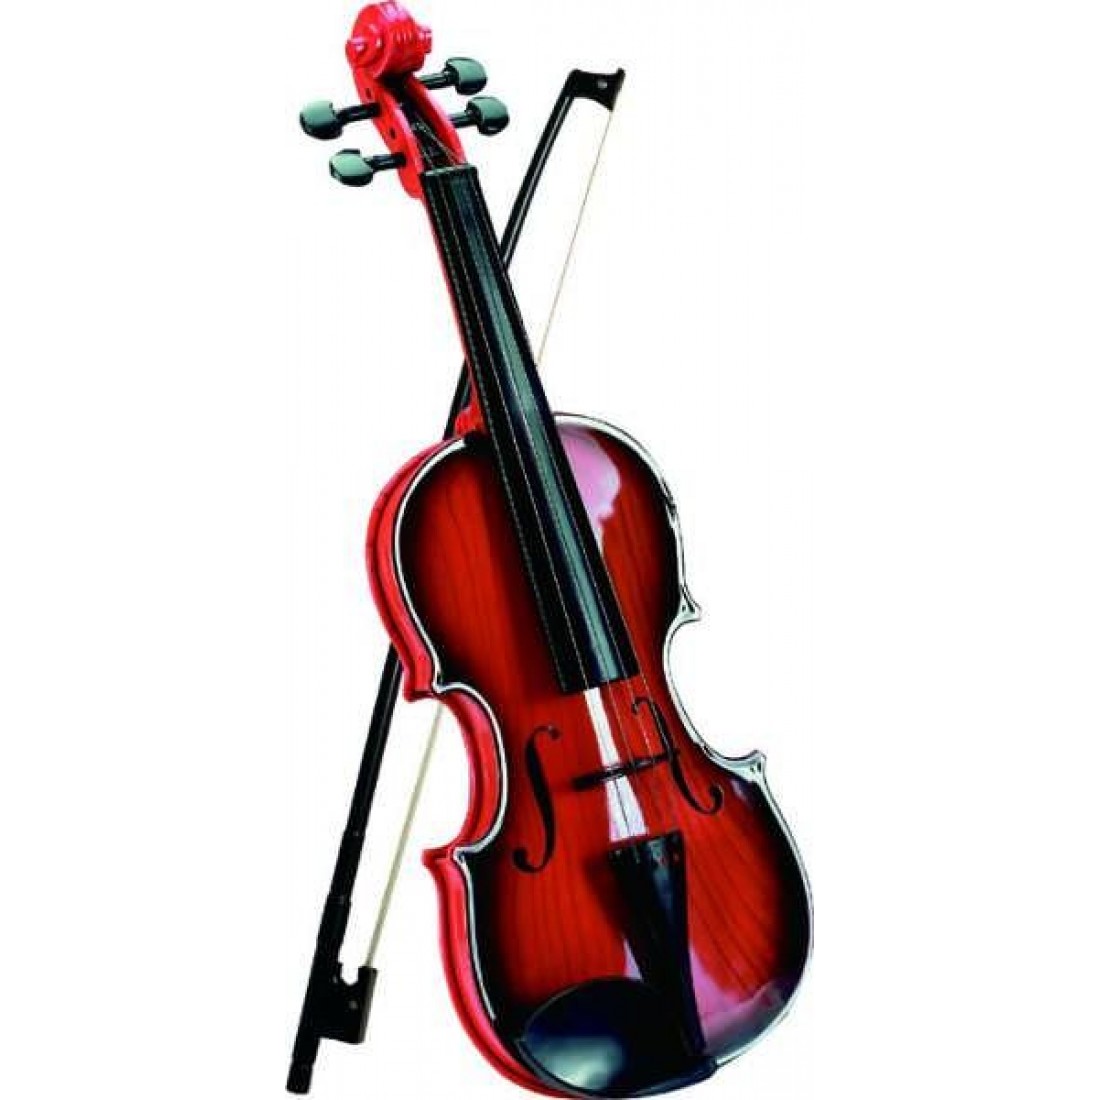 Violin instruments. Музыкальные инструменты. Скрипка музыкальный инструмент. Скрипка без фона. Музыкальные инструменты 3d.